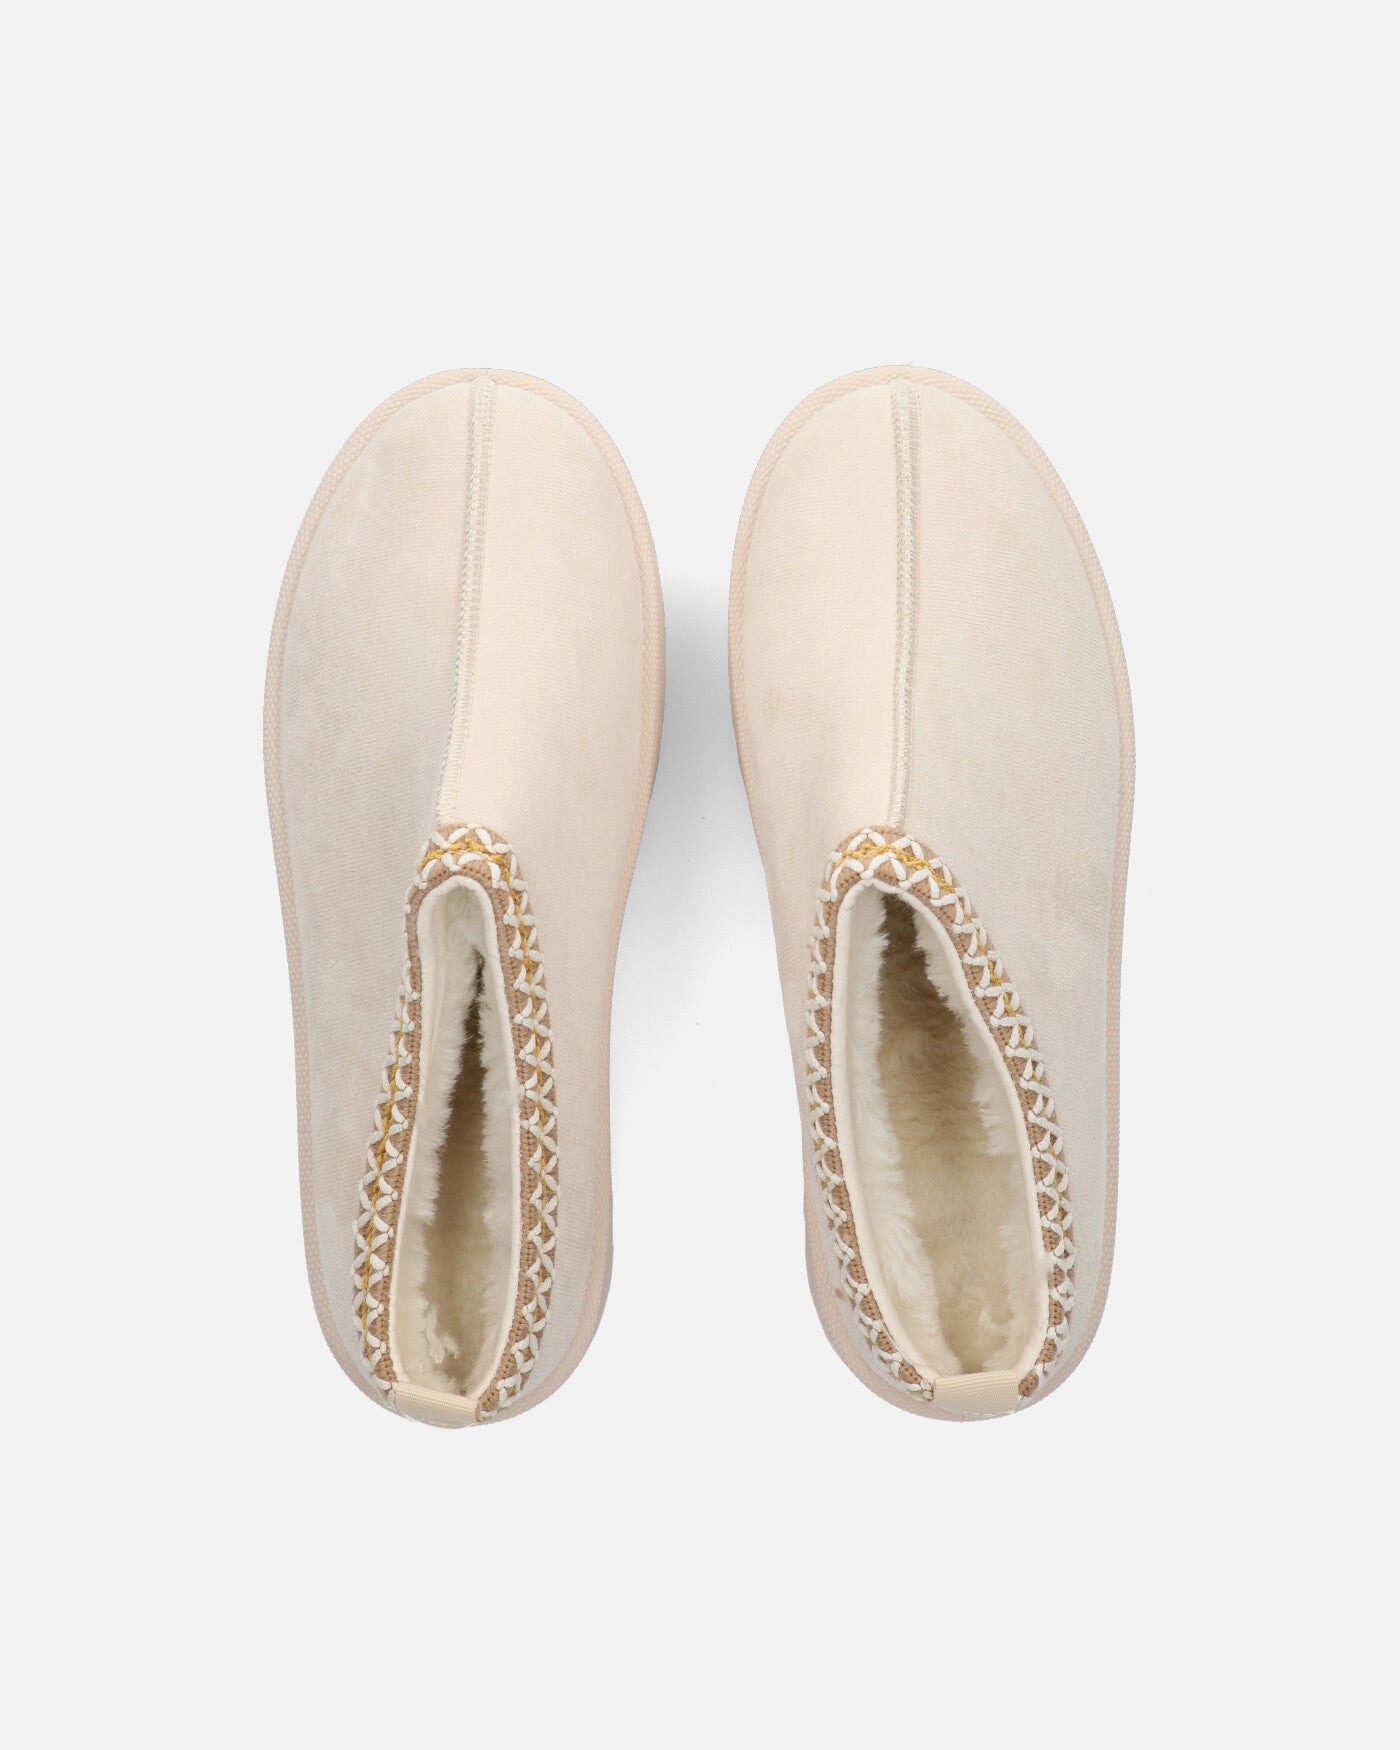 ZELDA - light beige suede platform slippers